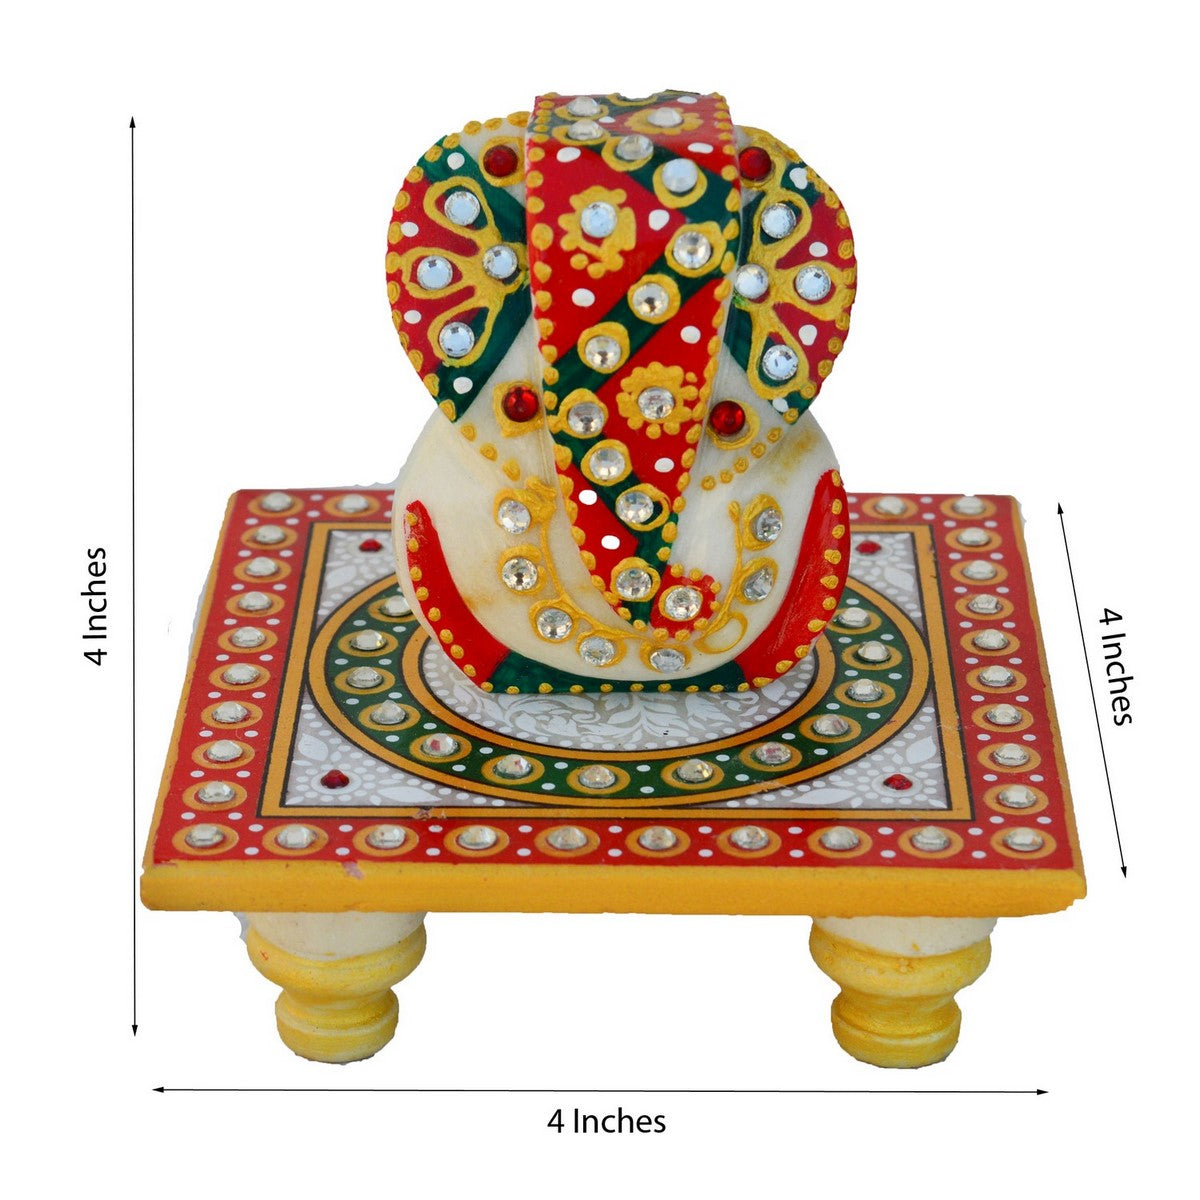 Stone Rudraksh Rakhi with Lord Ganesha on Kundan Studded Marble Chowki and Roli Tikka Matki, Best Wishes Greeting Card 1